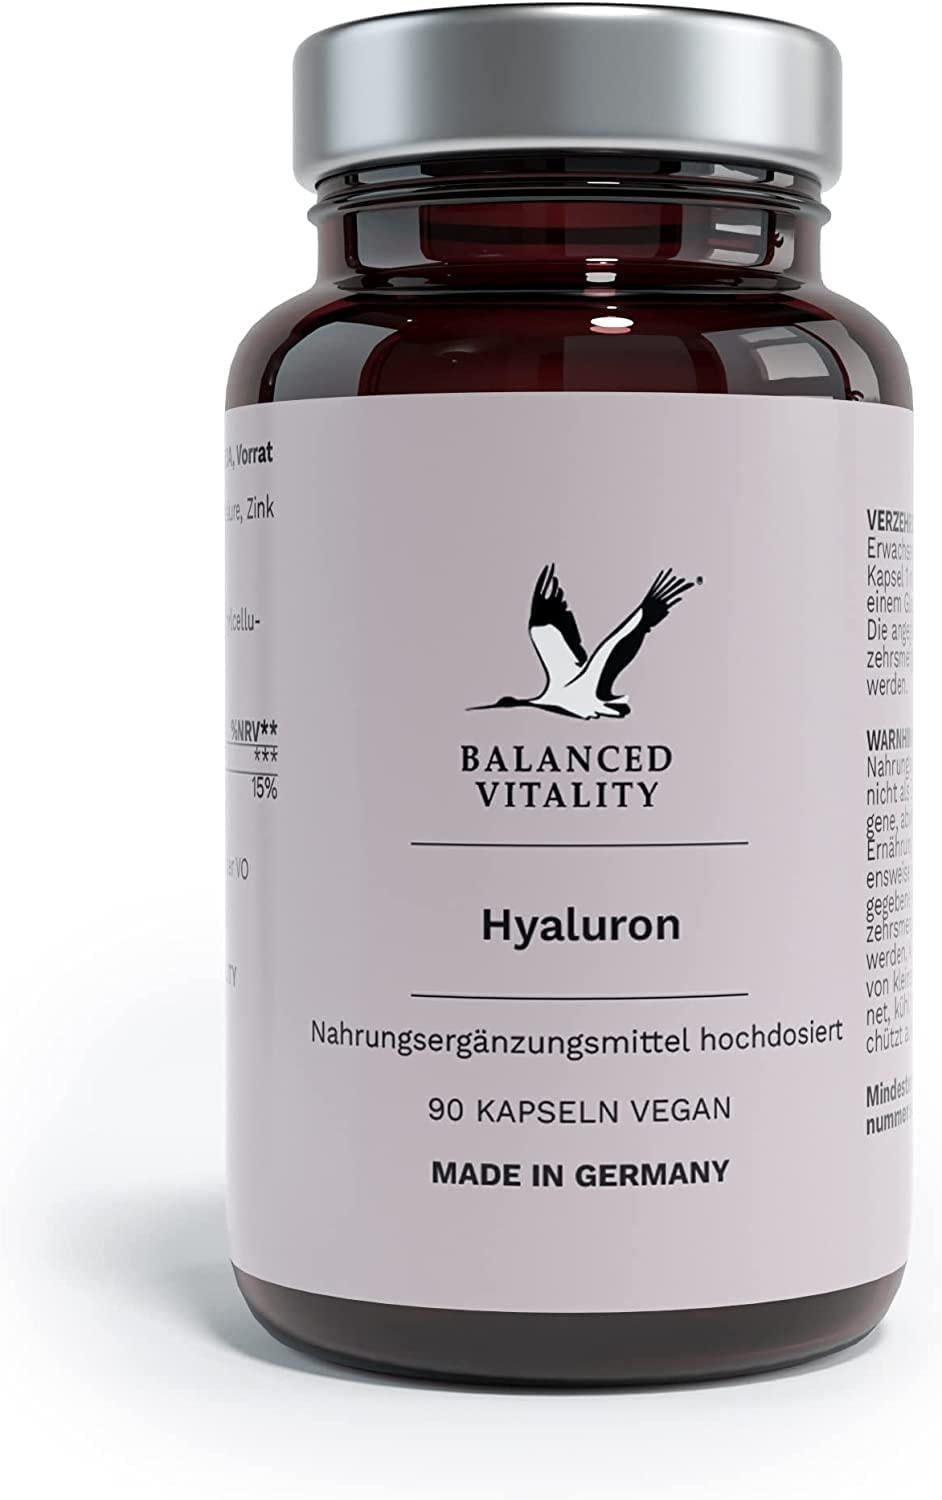 BALANCED VITALITY Hyaluron - mit Zink, 500-700 kDa – 500mg Hyaluron – ohne Zusatzstoffe – laborgeprüft – für Haut, Knochen, Bandscheiben & Gelenke - 90 vegane Kapseln für 3 Monate – Made in Germany